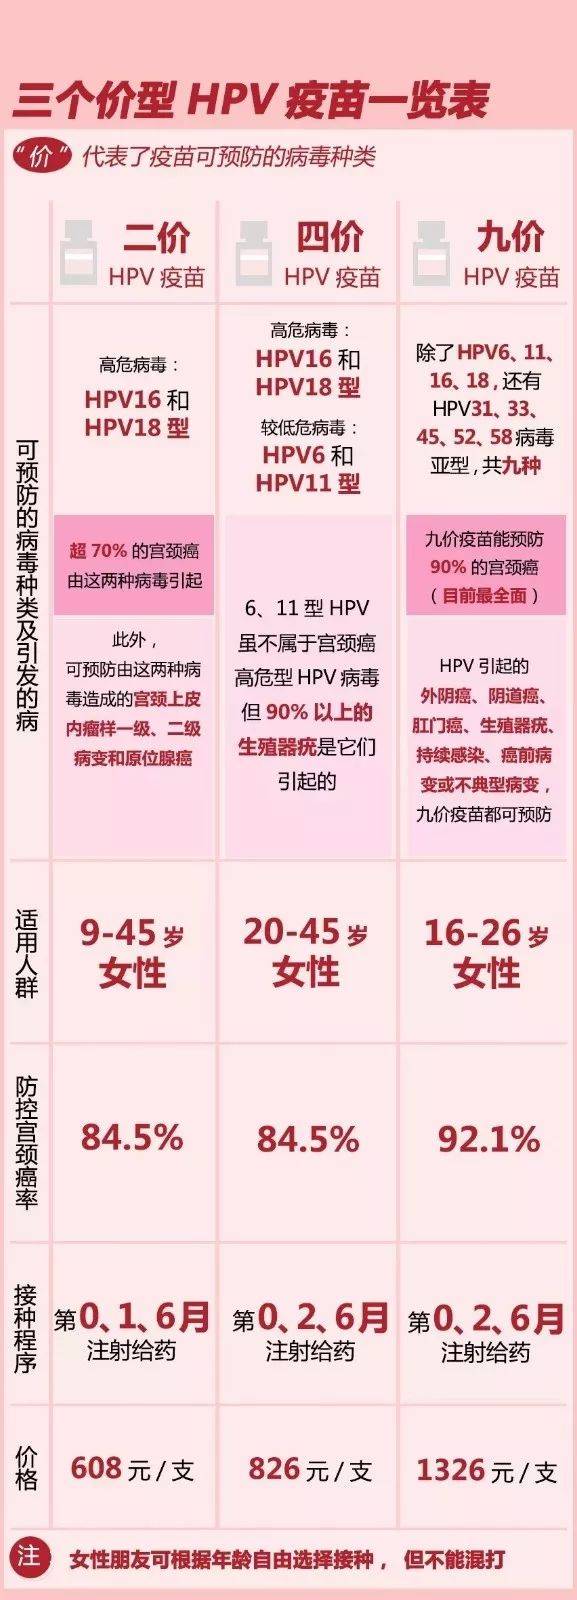 【好消息】德清县第五批九价hpv疫苗10月11日开始预约